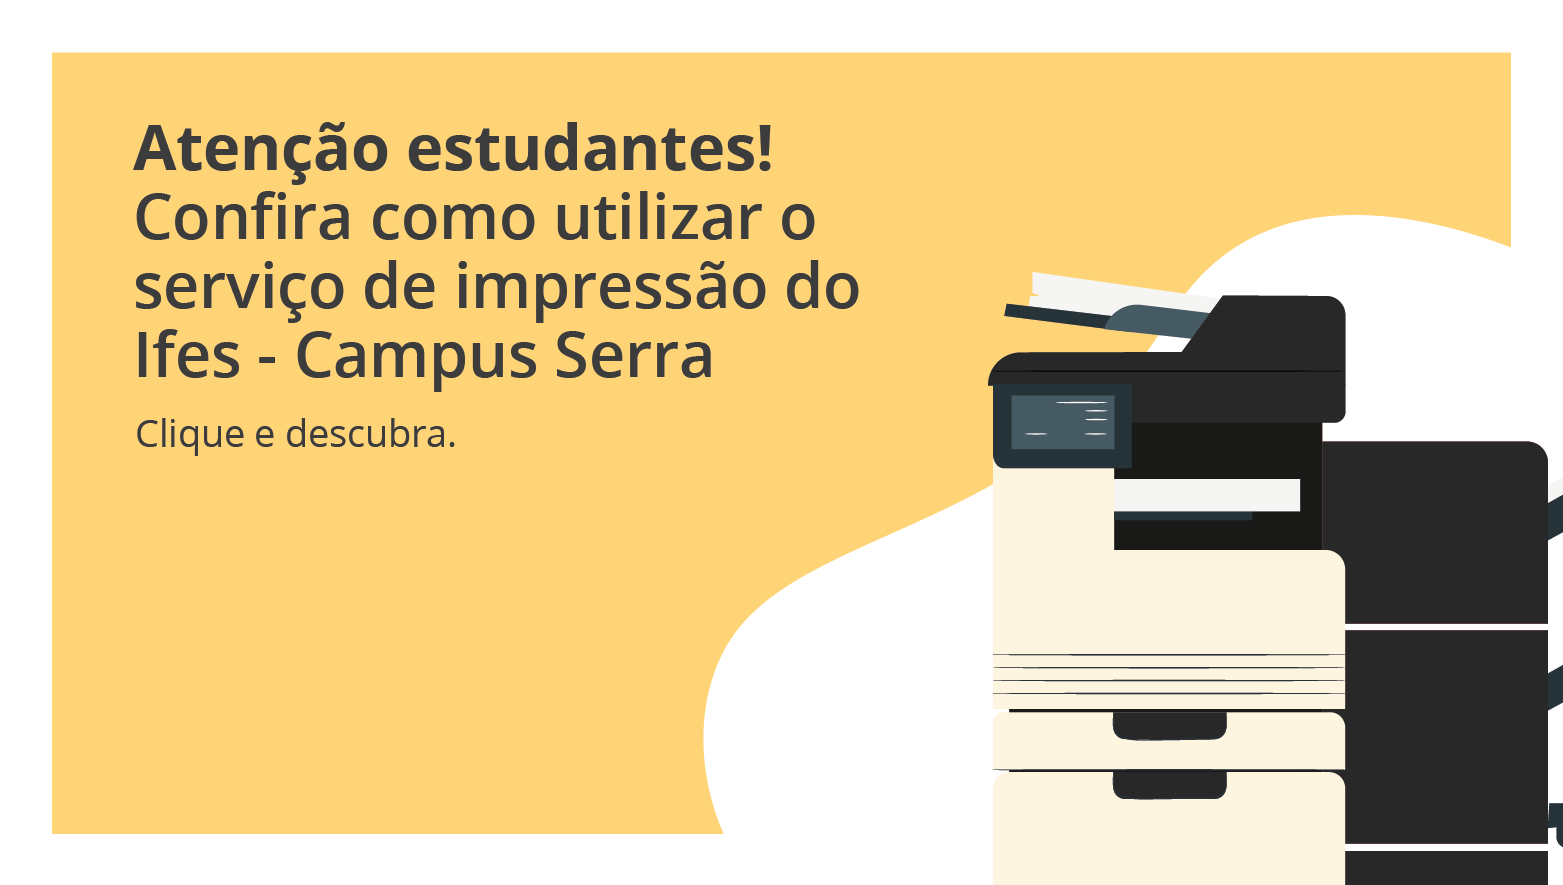 Os estudantes do Campus Serra podem utilizar o serviço de impressão